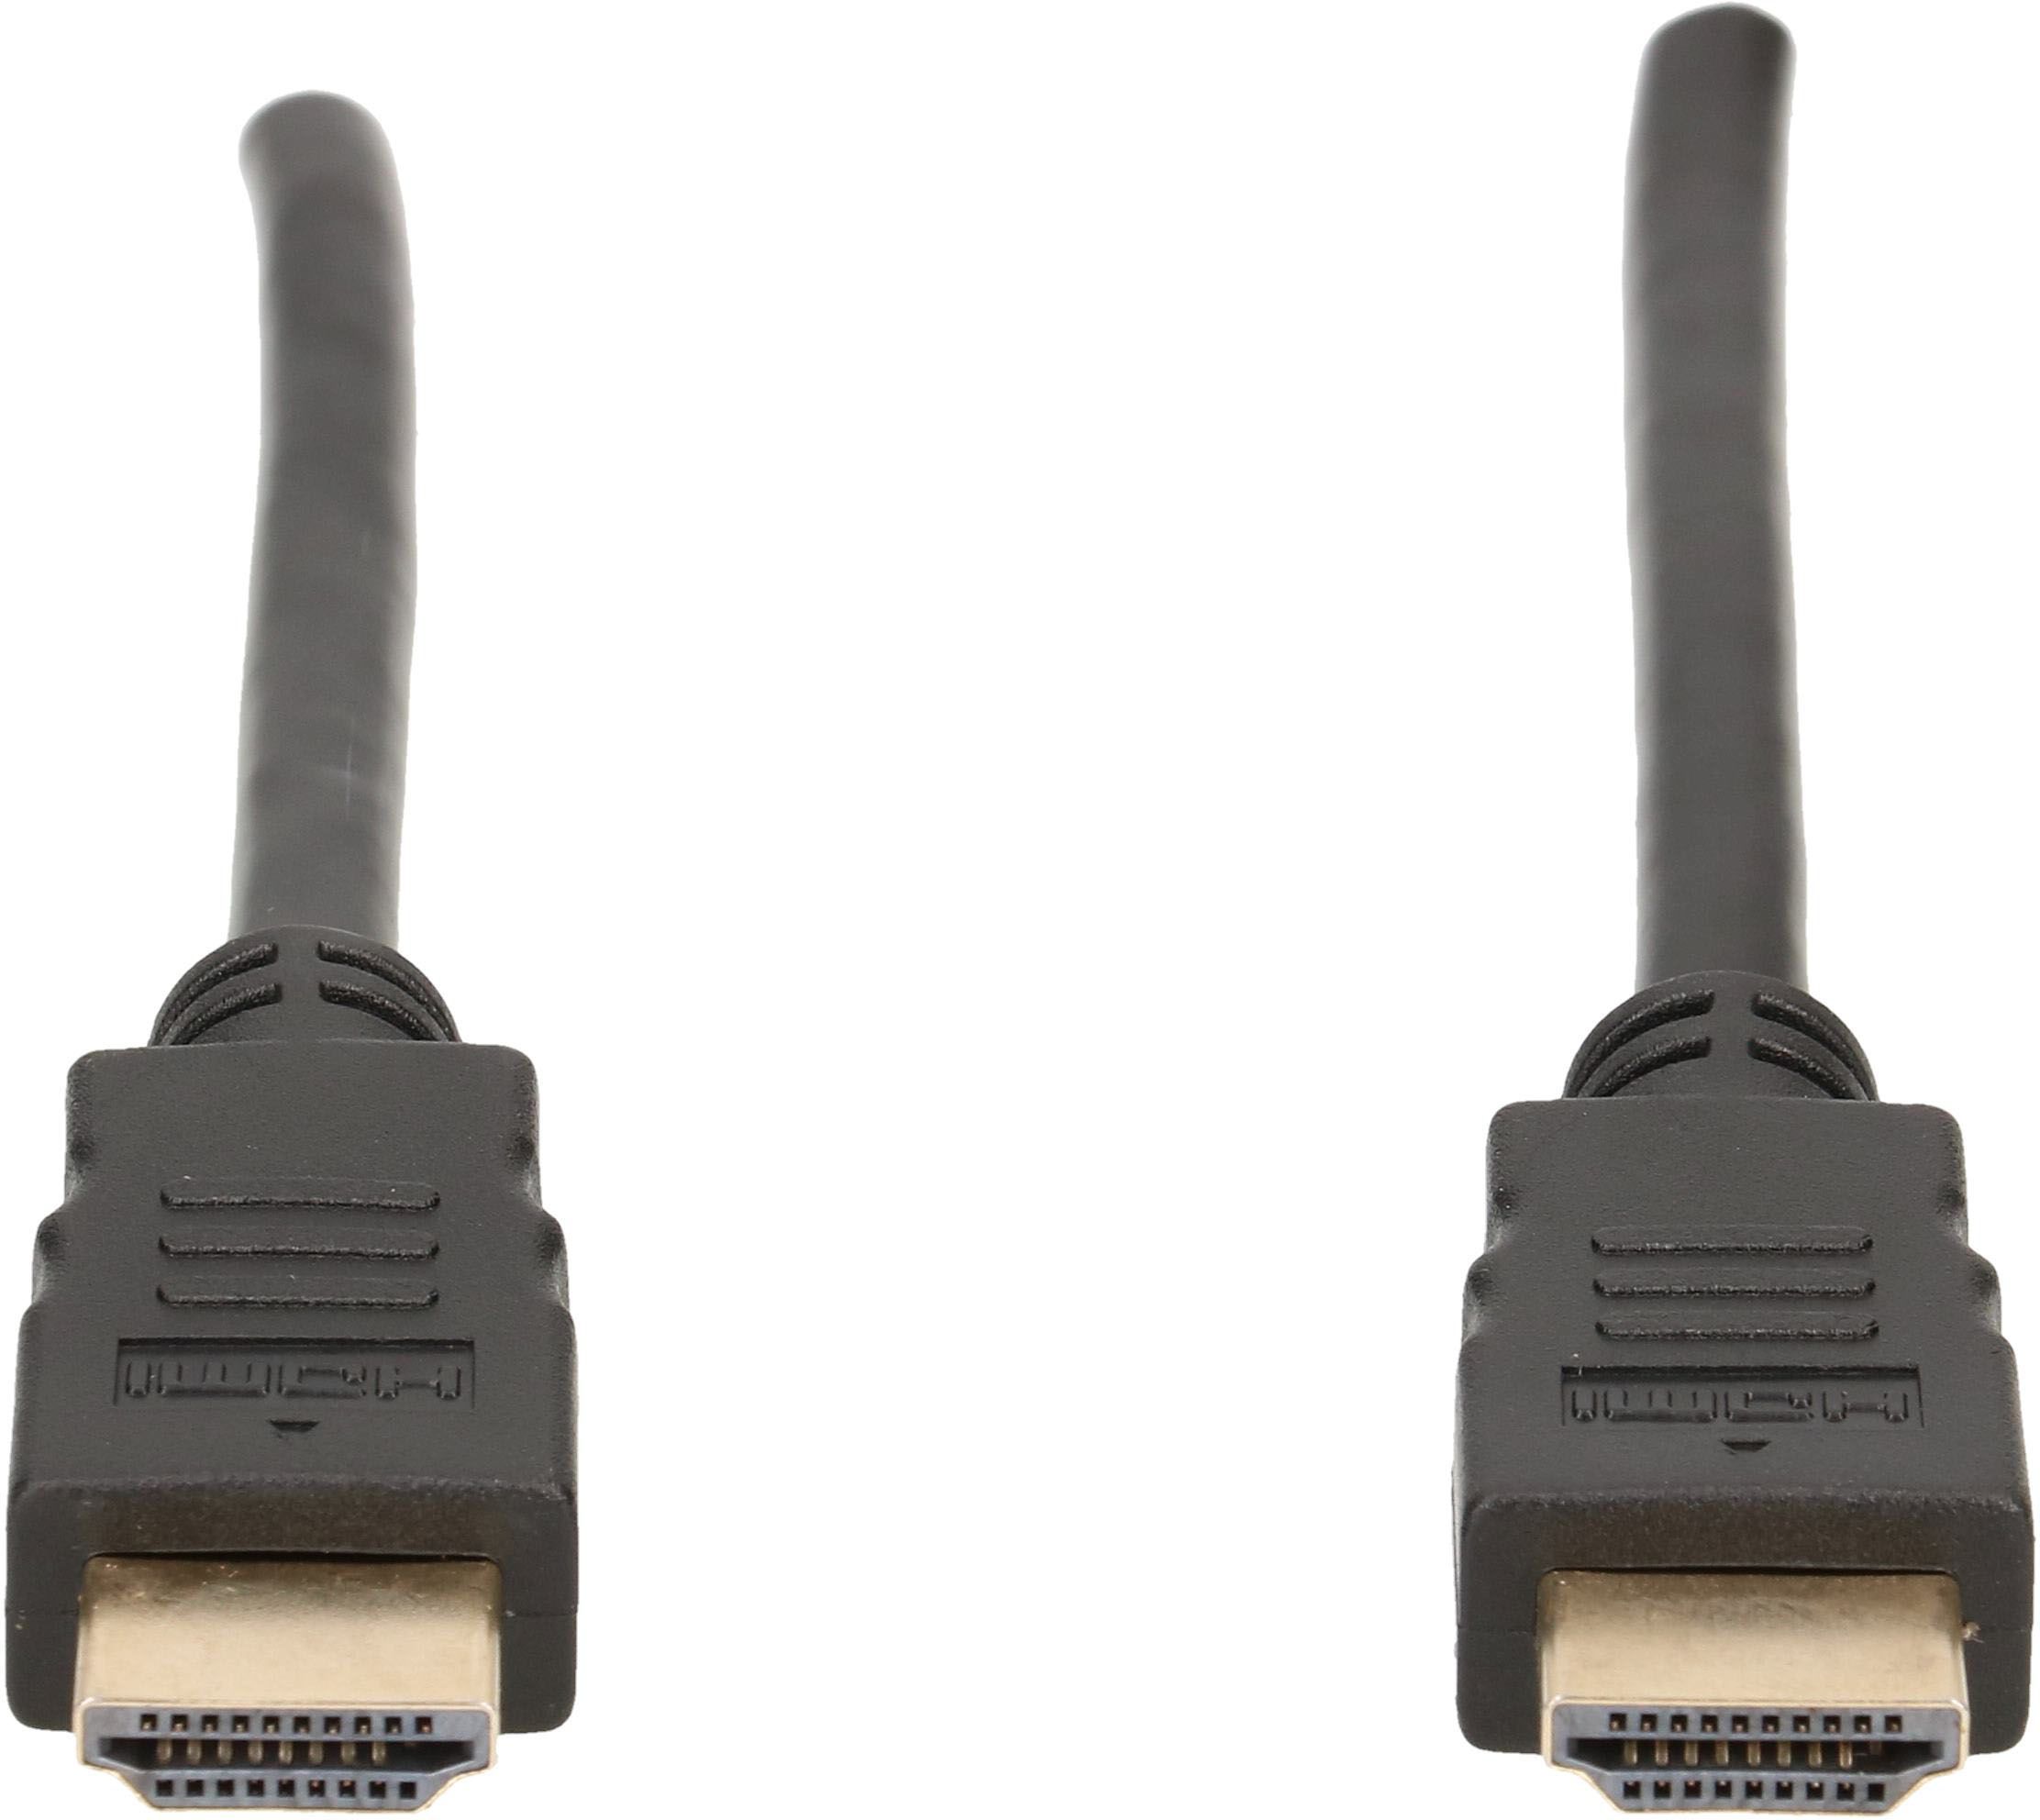 High Speed HDMI Kabel mit Ethernet 1.5m schwarz